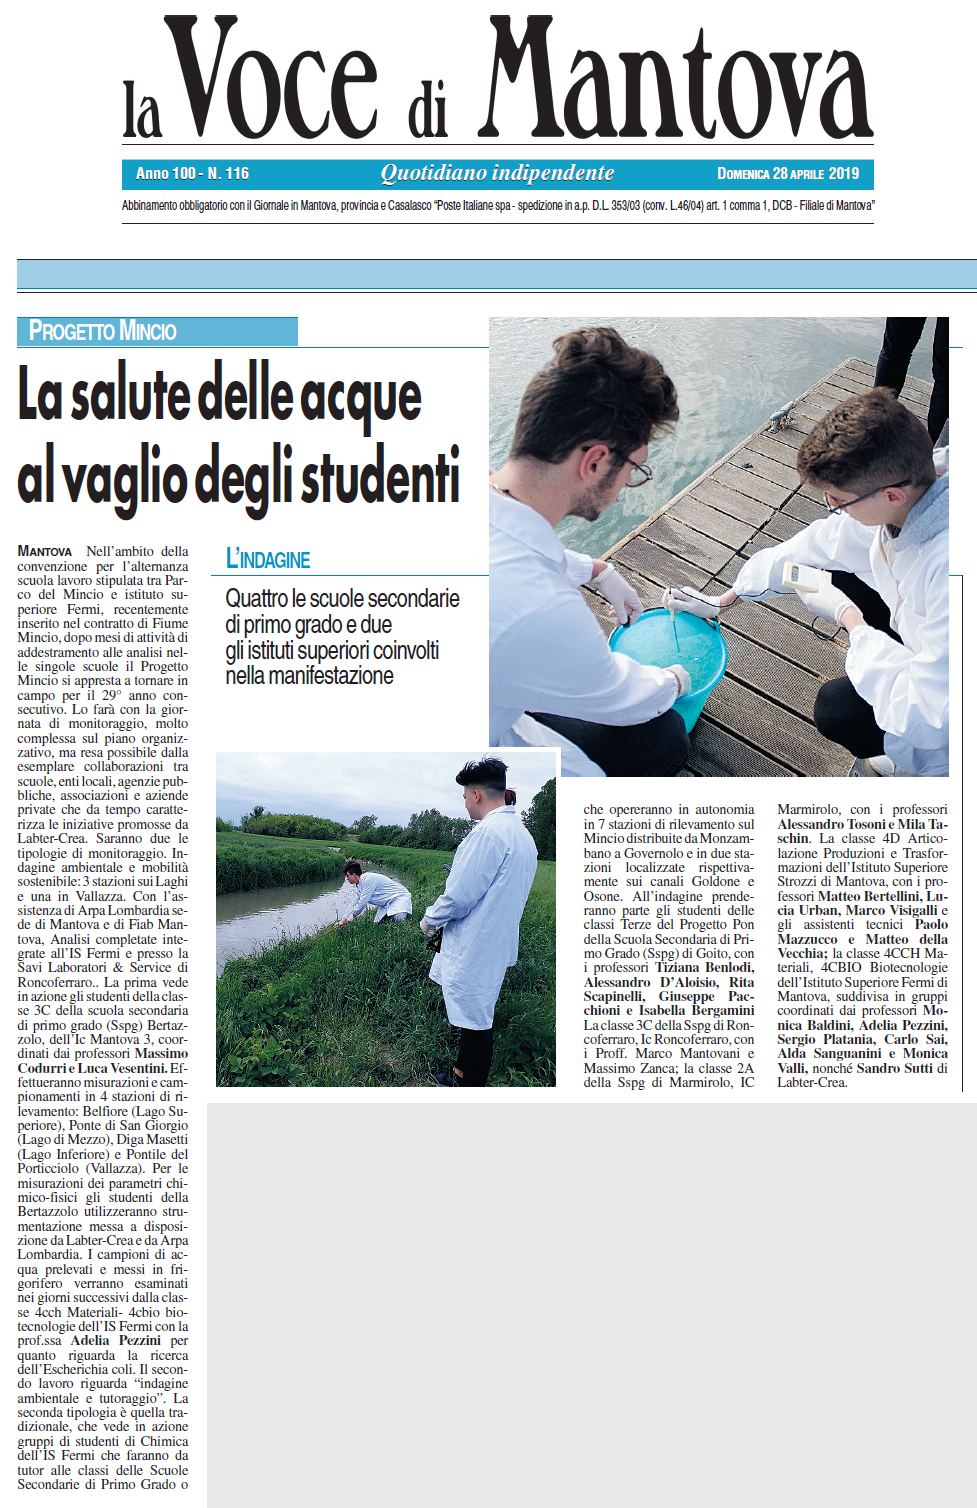 Voce di Mantova del 28-04-2019 La salute delle acque al vaglio degli studenti